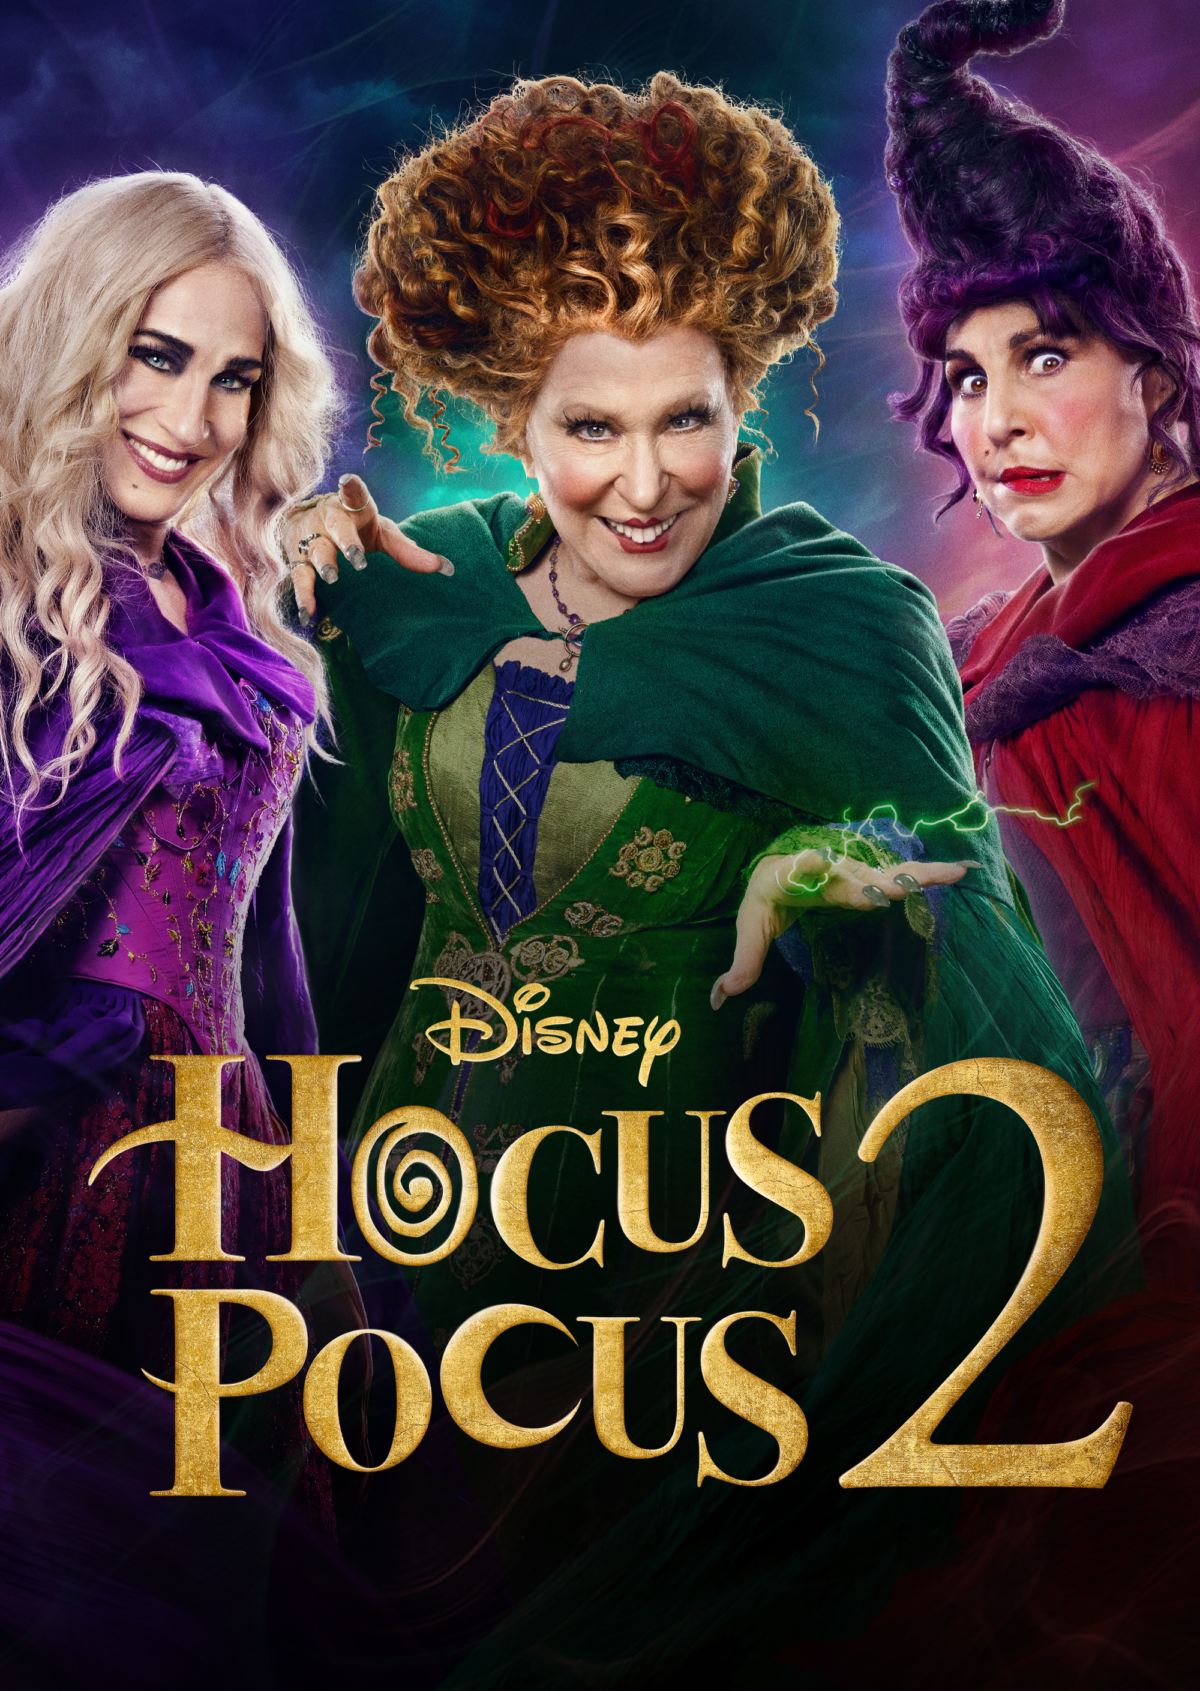 Disney's Hocus Pocus 2